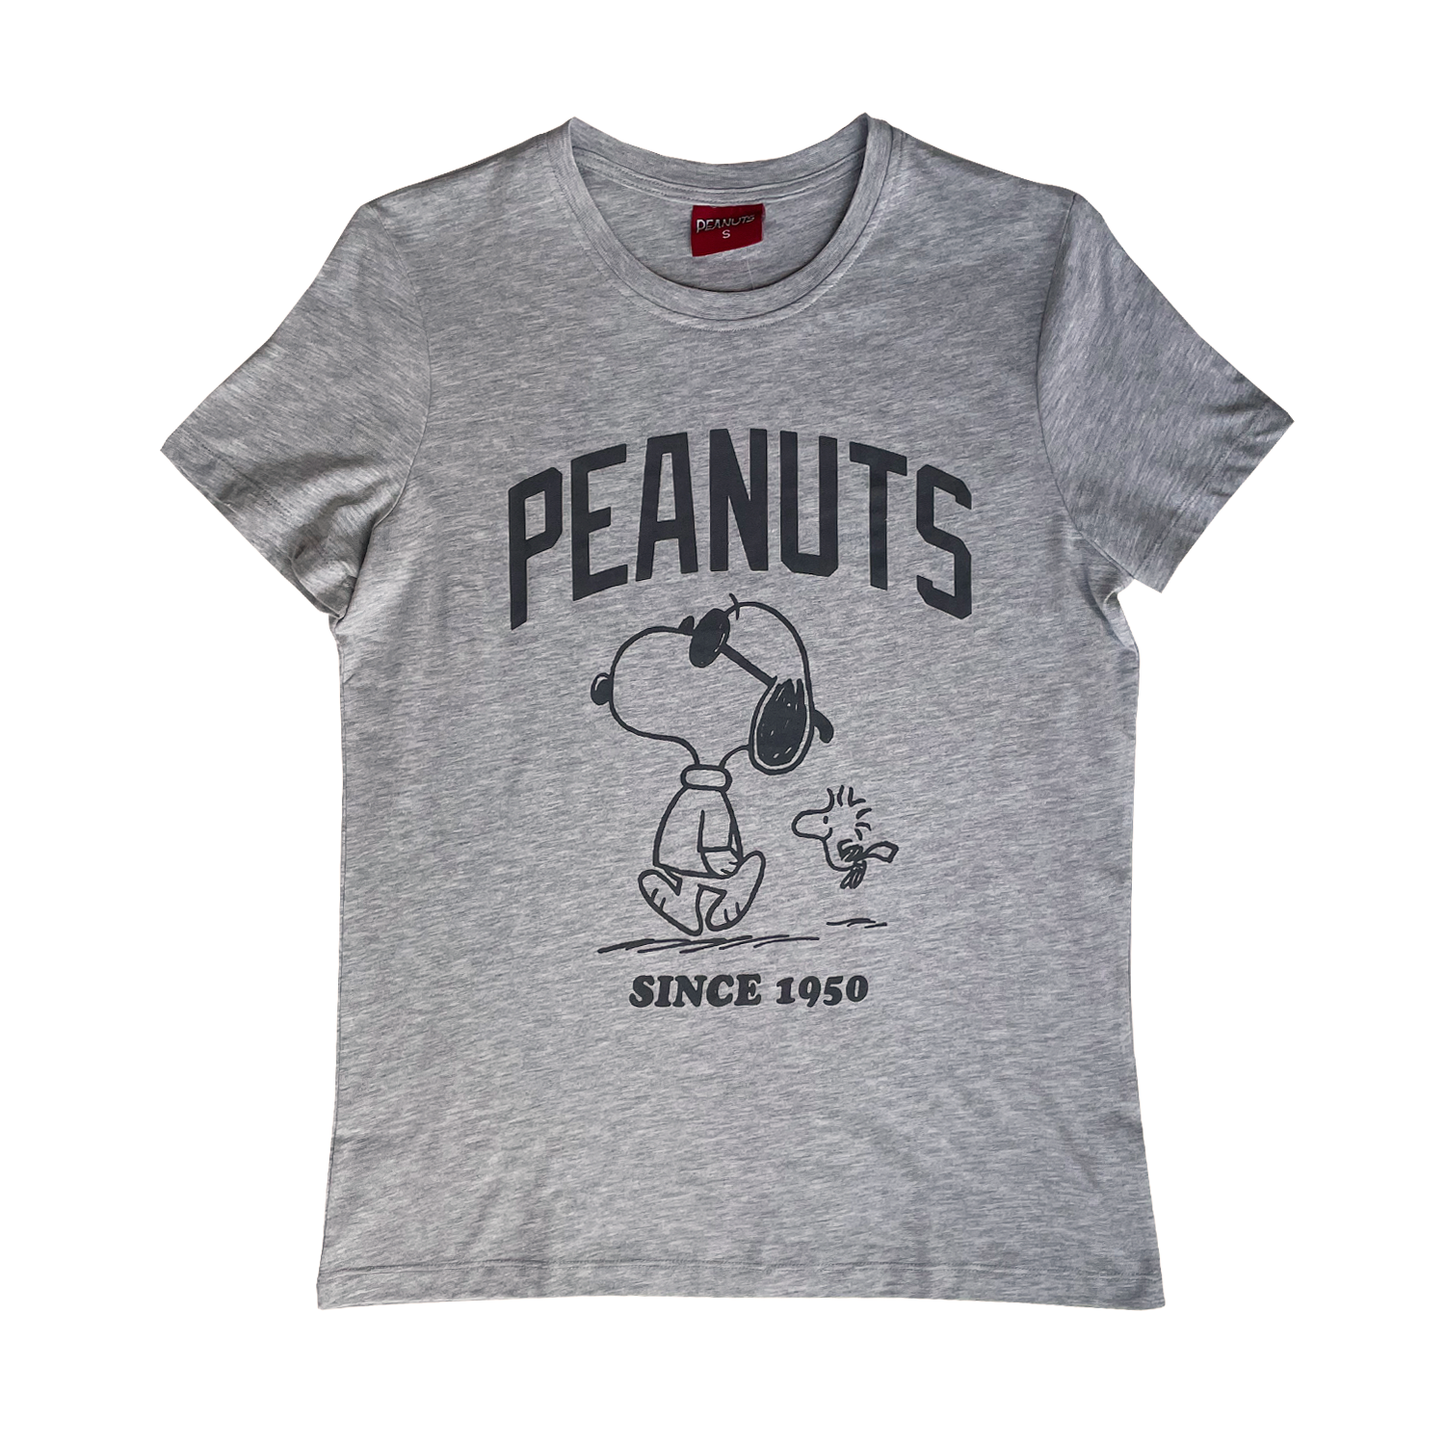 Peanuts - Since 1950 T-Shirt